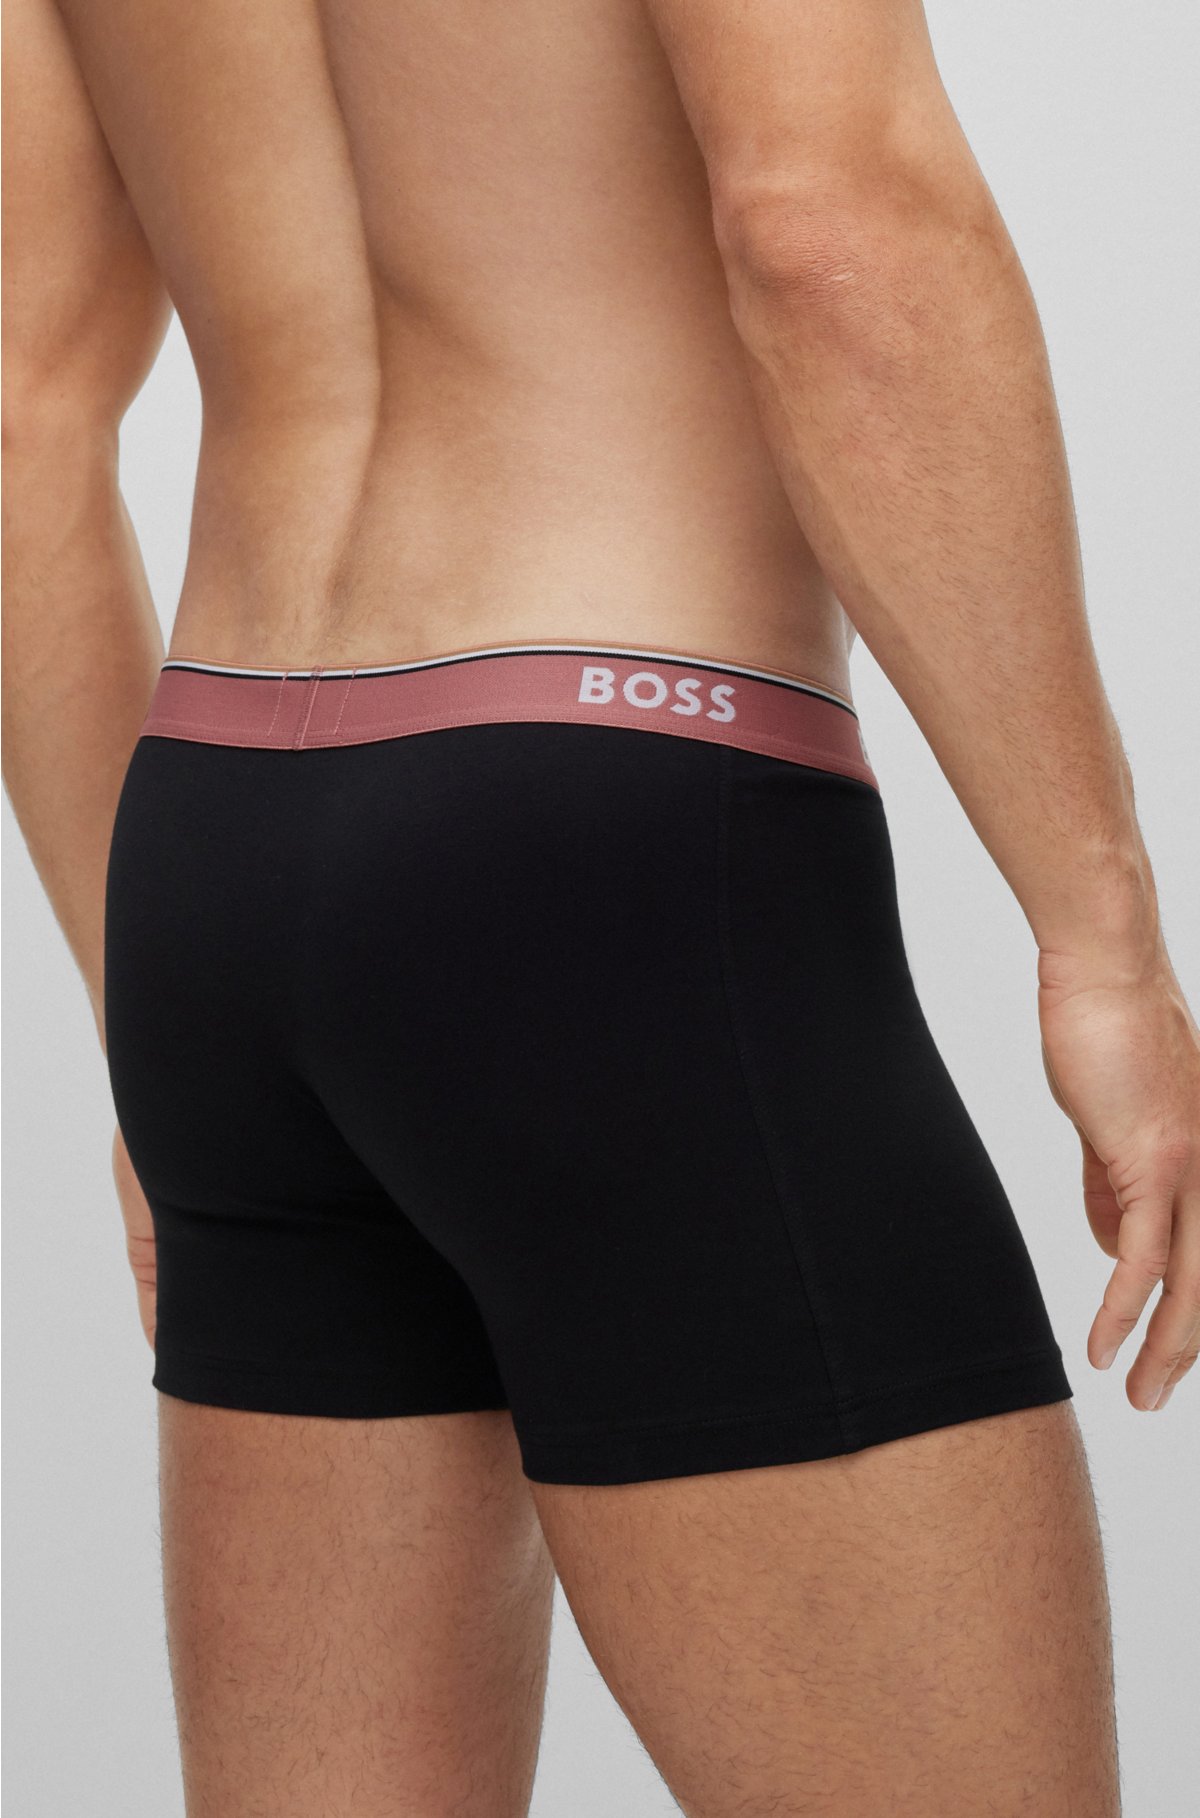 Auffüllen [sofortige Lieferung] BOSS - Three-pack of waistbands with briefs boxer logo